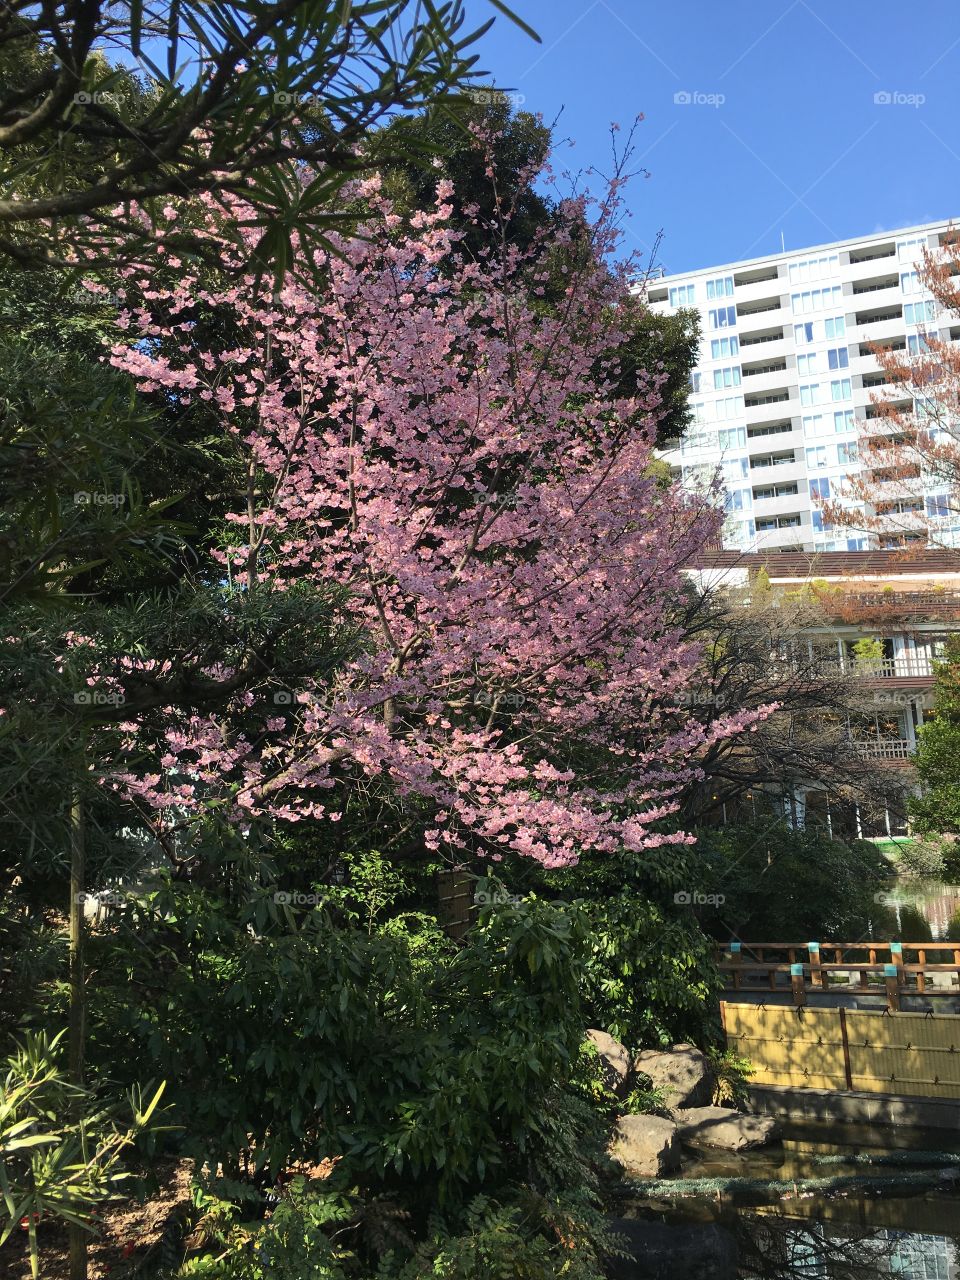 Sakura, or Cherry blossom tree, in full bloom 